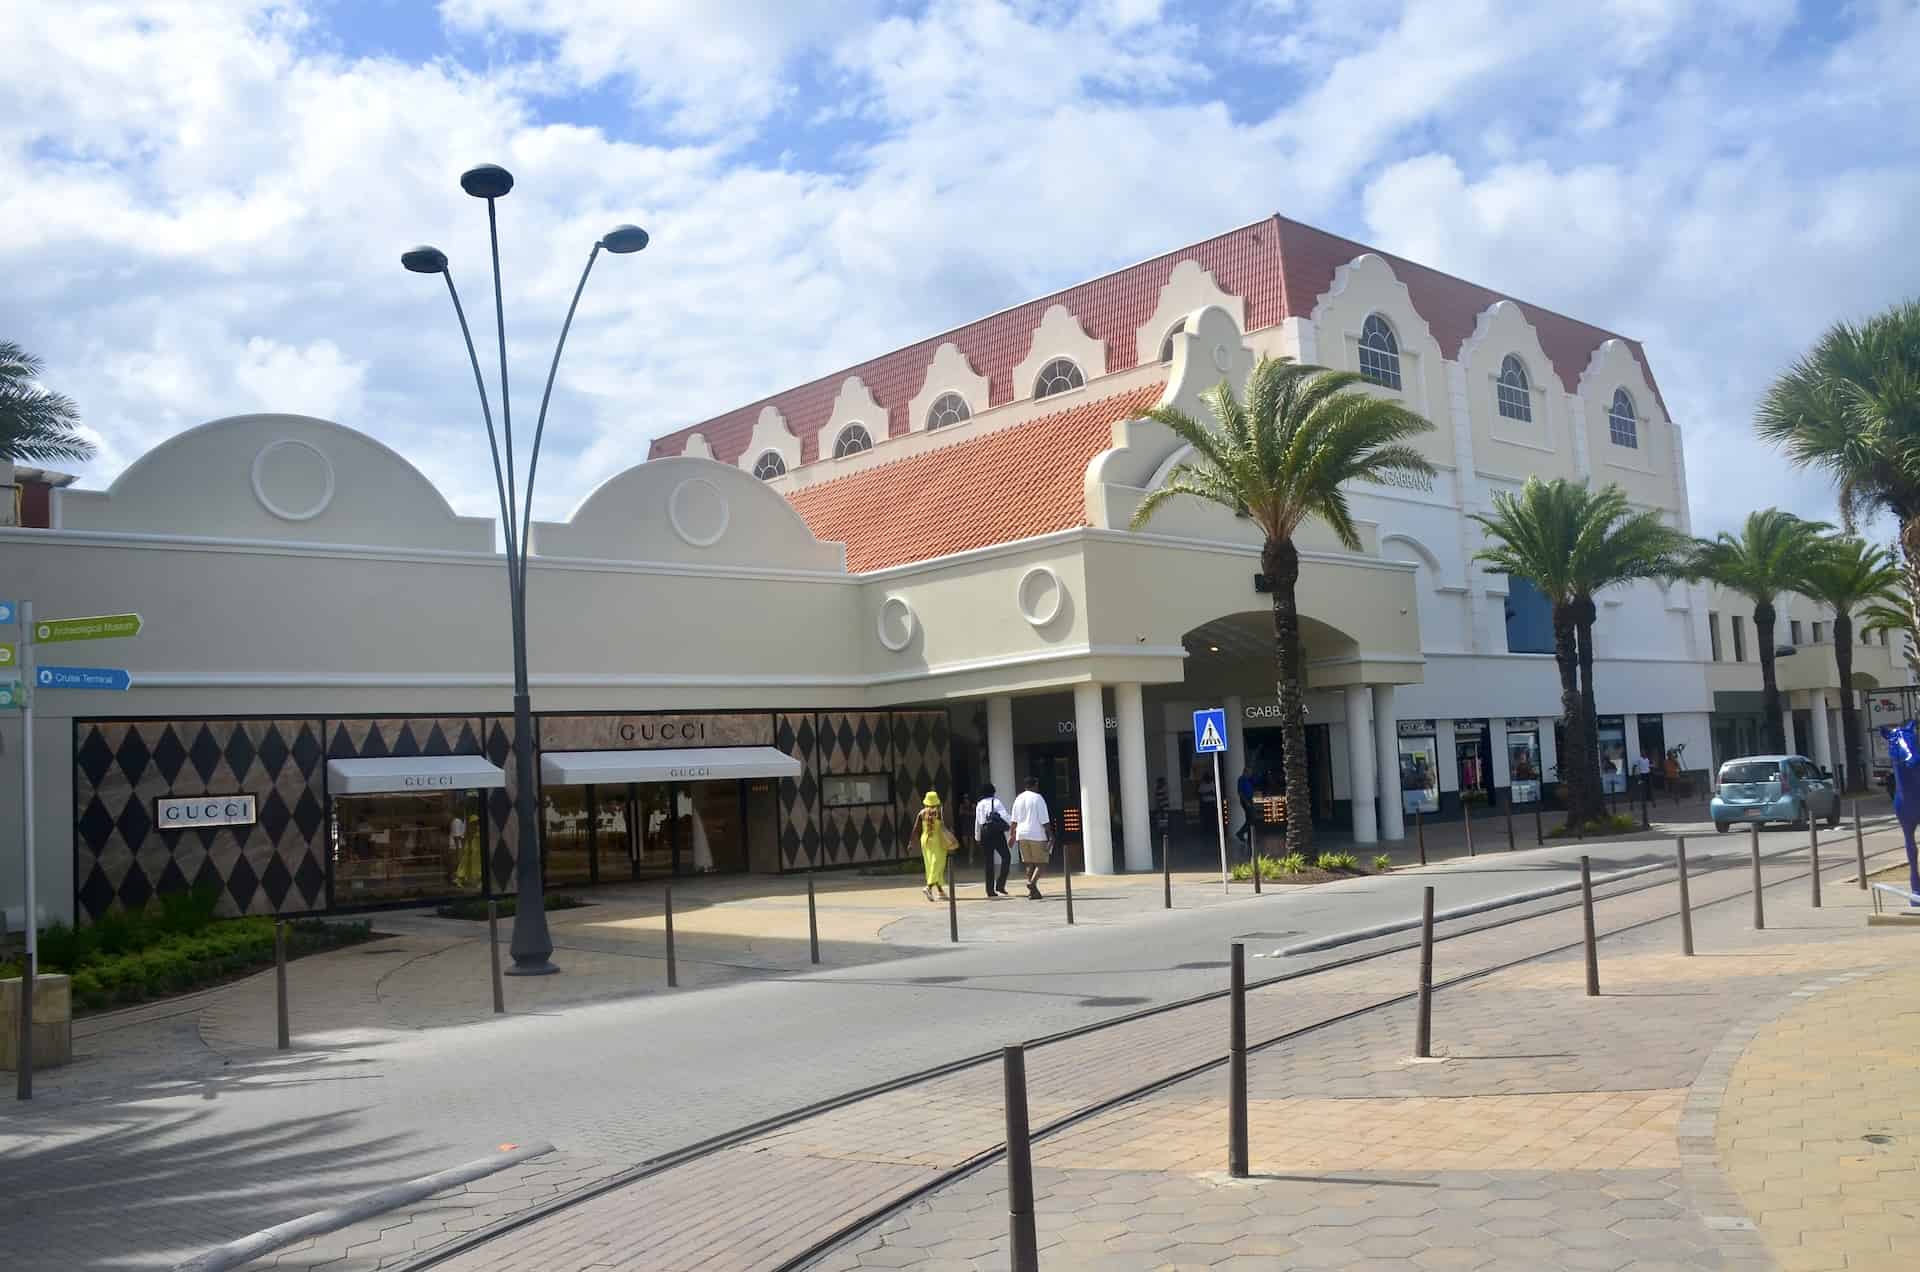 Renaissance Mall in Oranjestad, Aruba